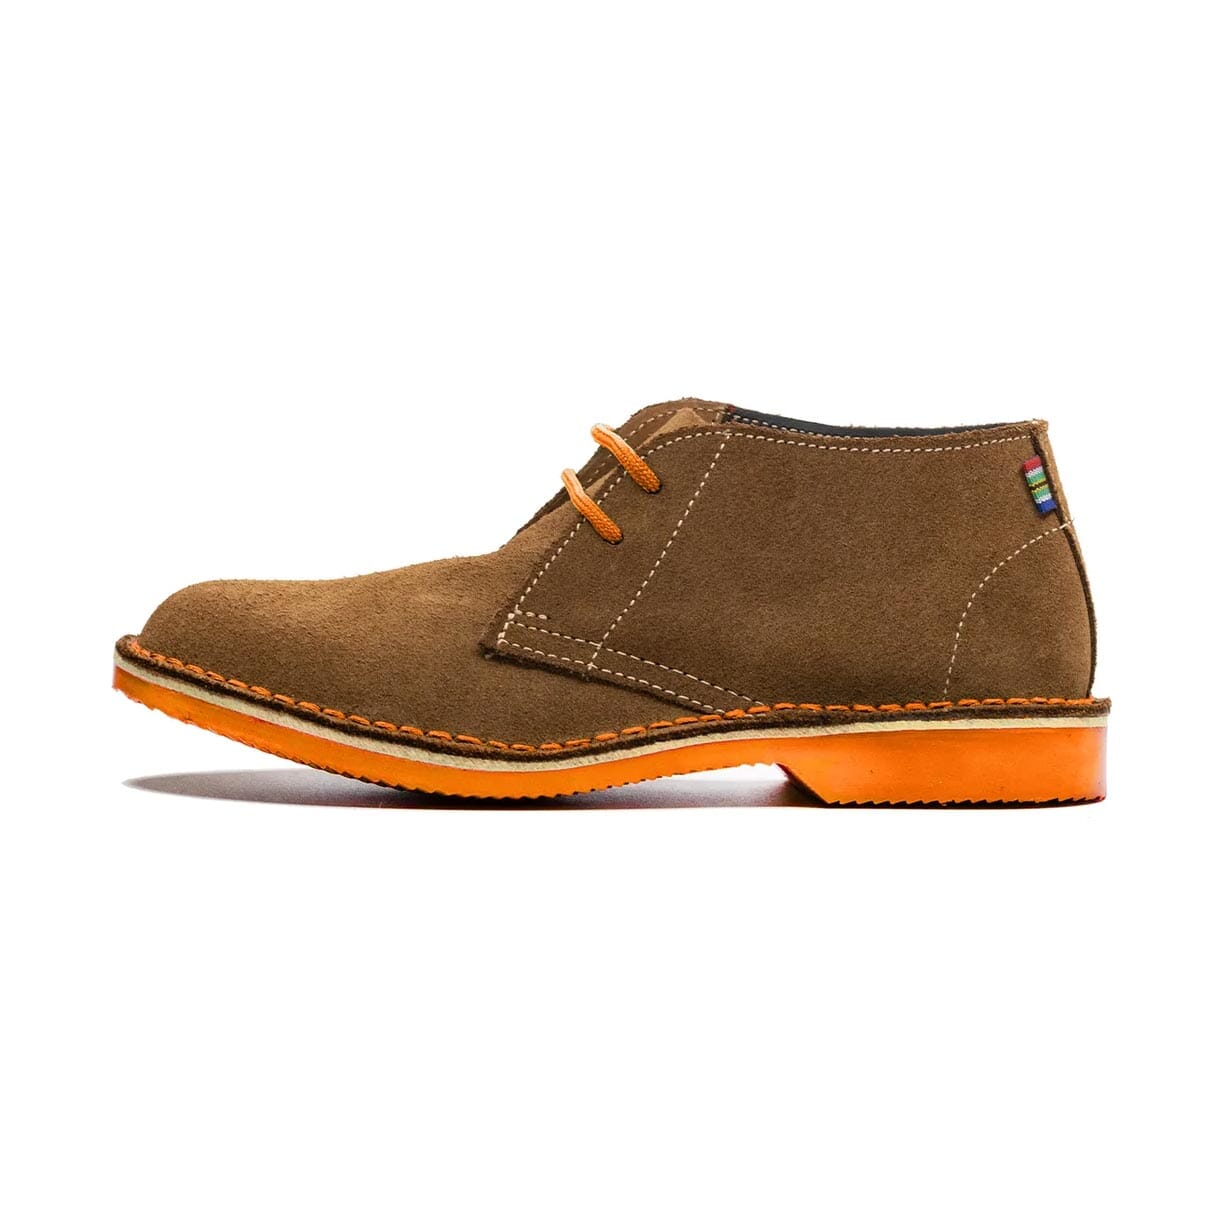 Veldskoen Traditional Heritage Leather Shoe Shoes Veldskoen Bloem Orange 2 